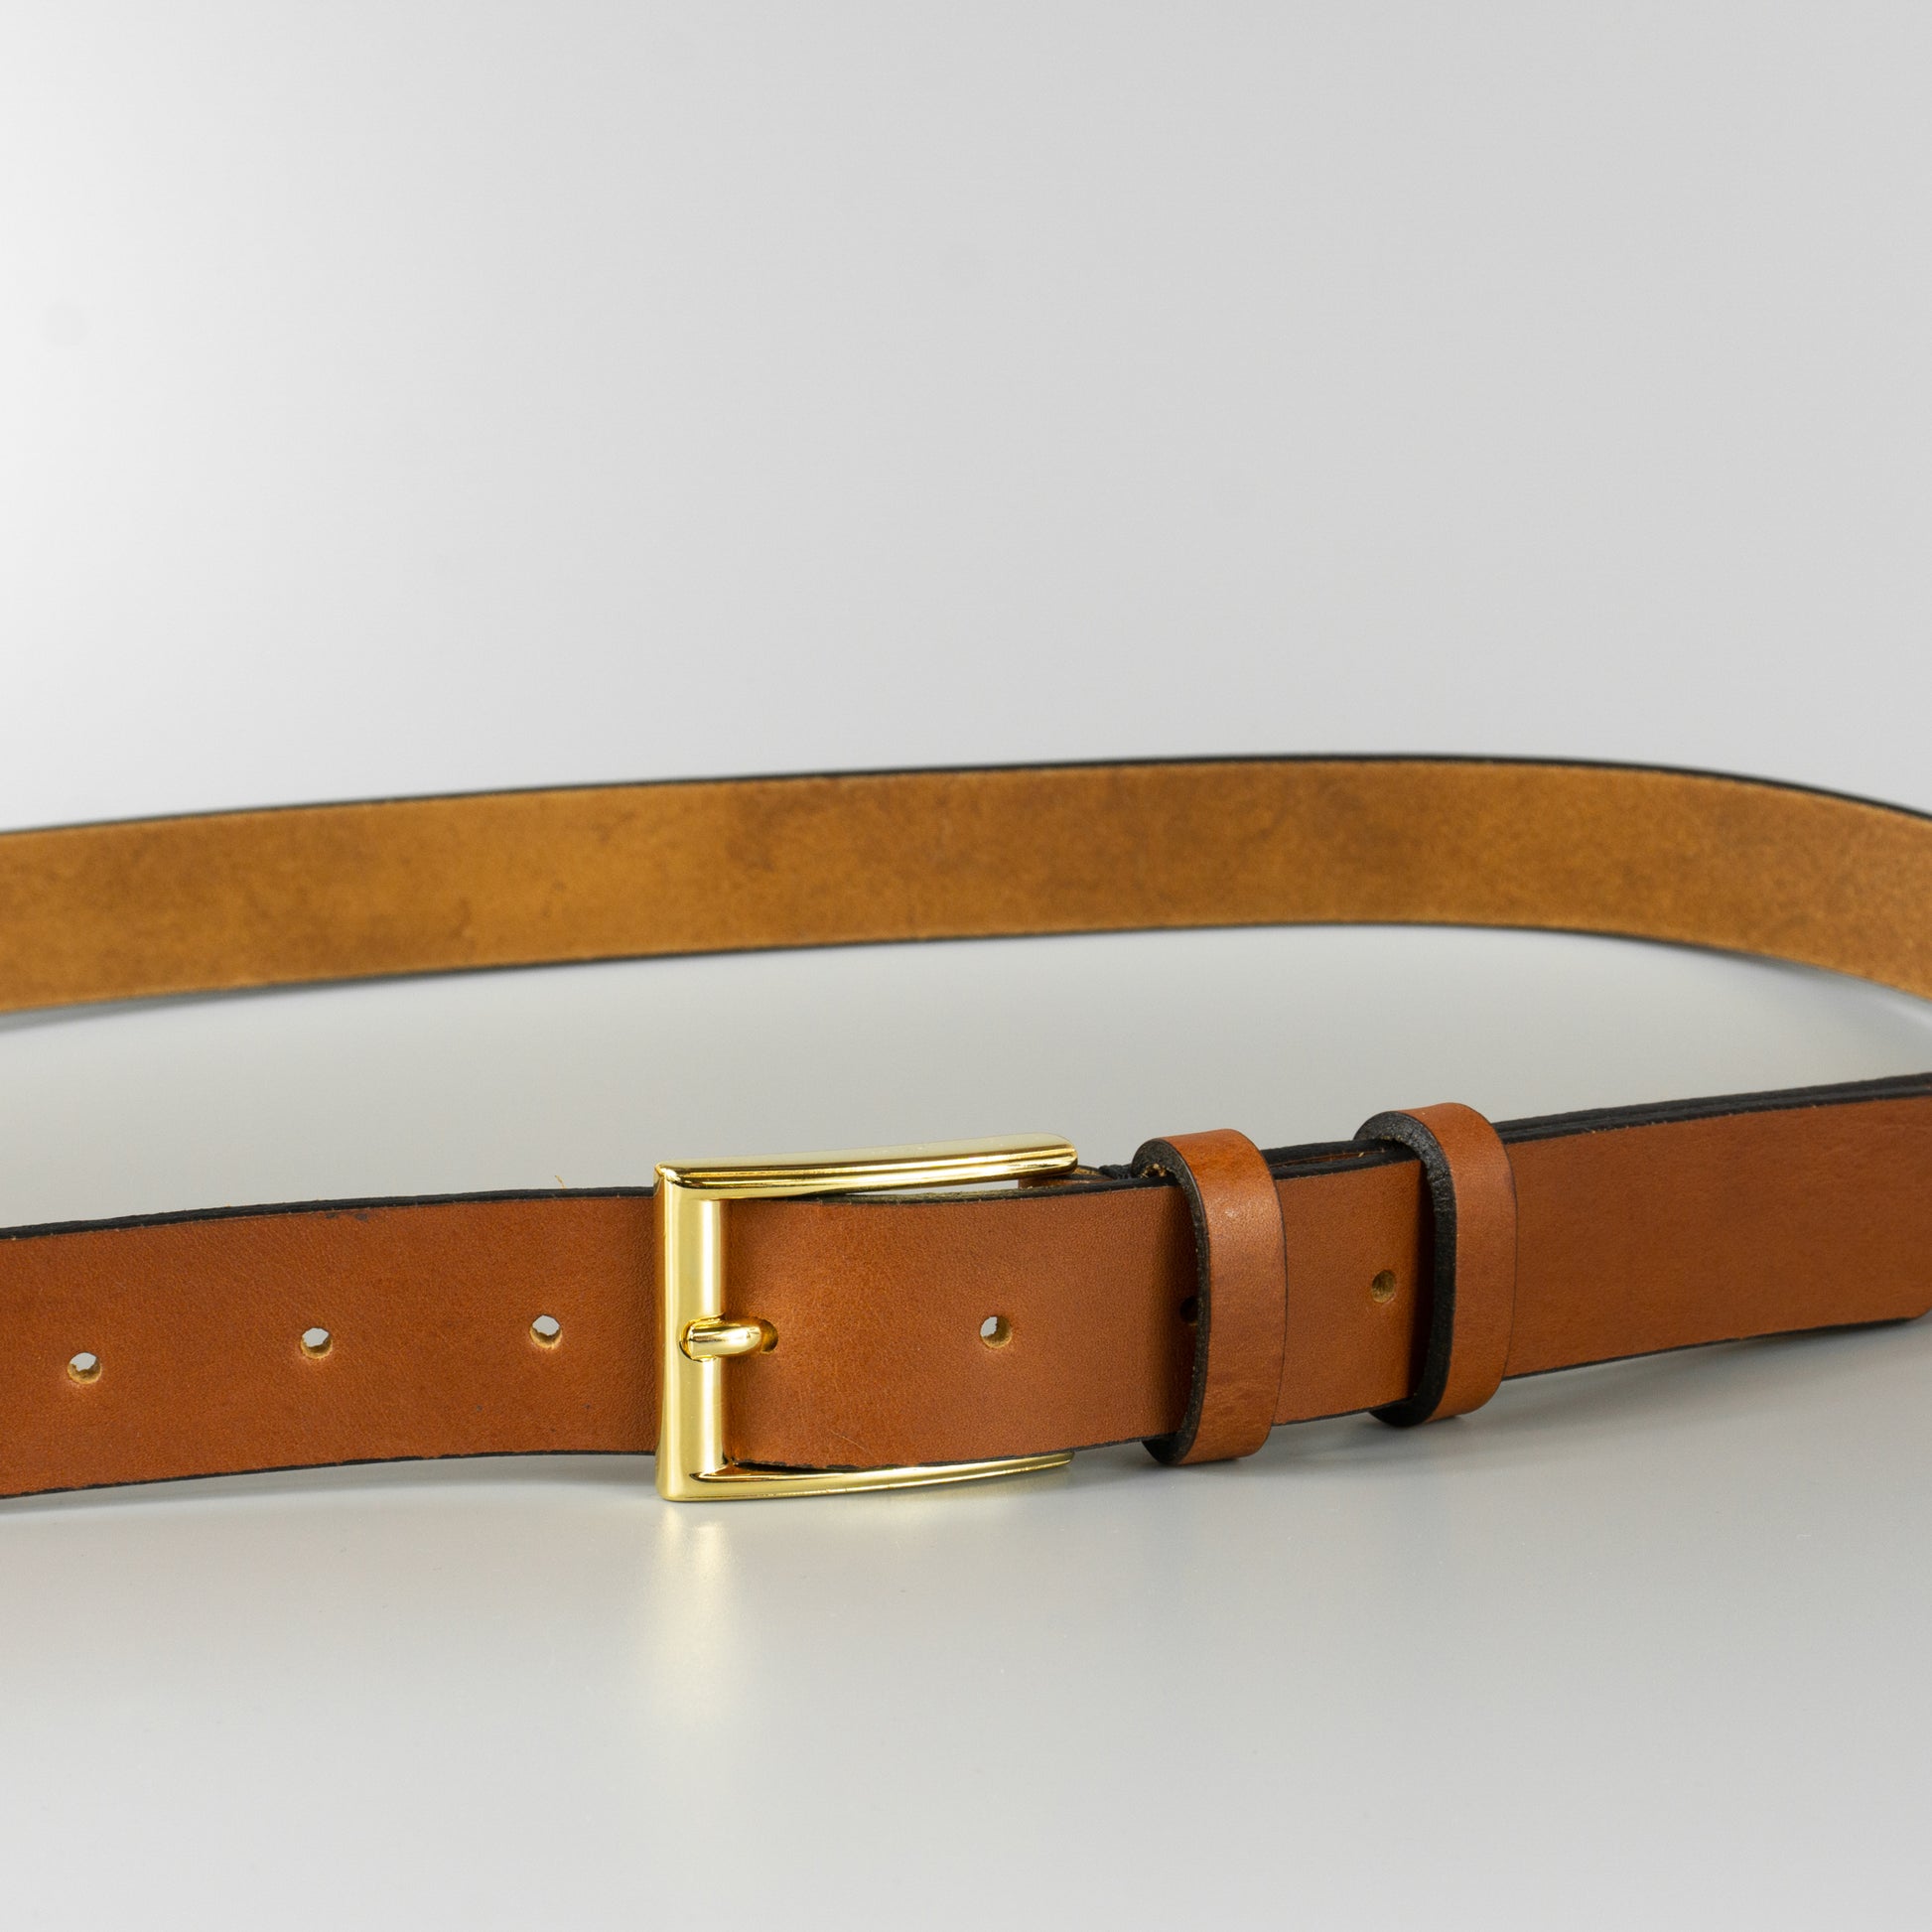 Hnedý pánsky kožený opasok do obleku "Brown gold" široký 3 cm